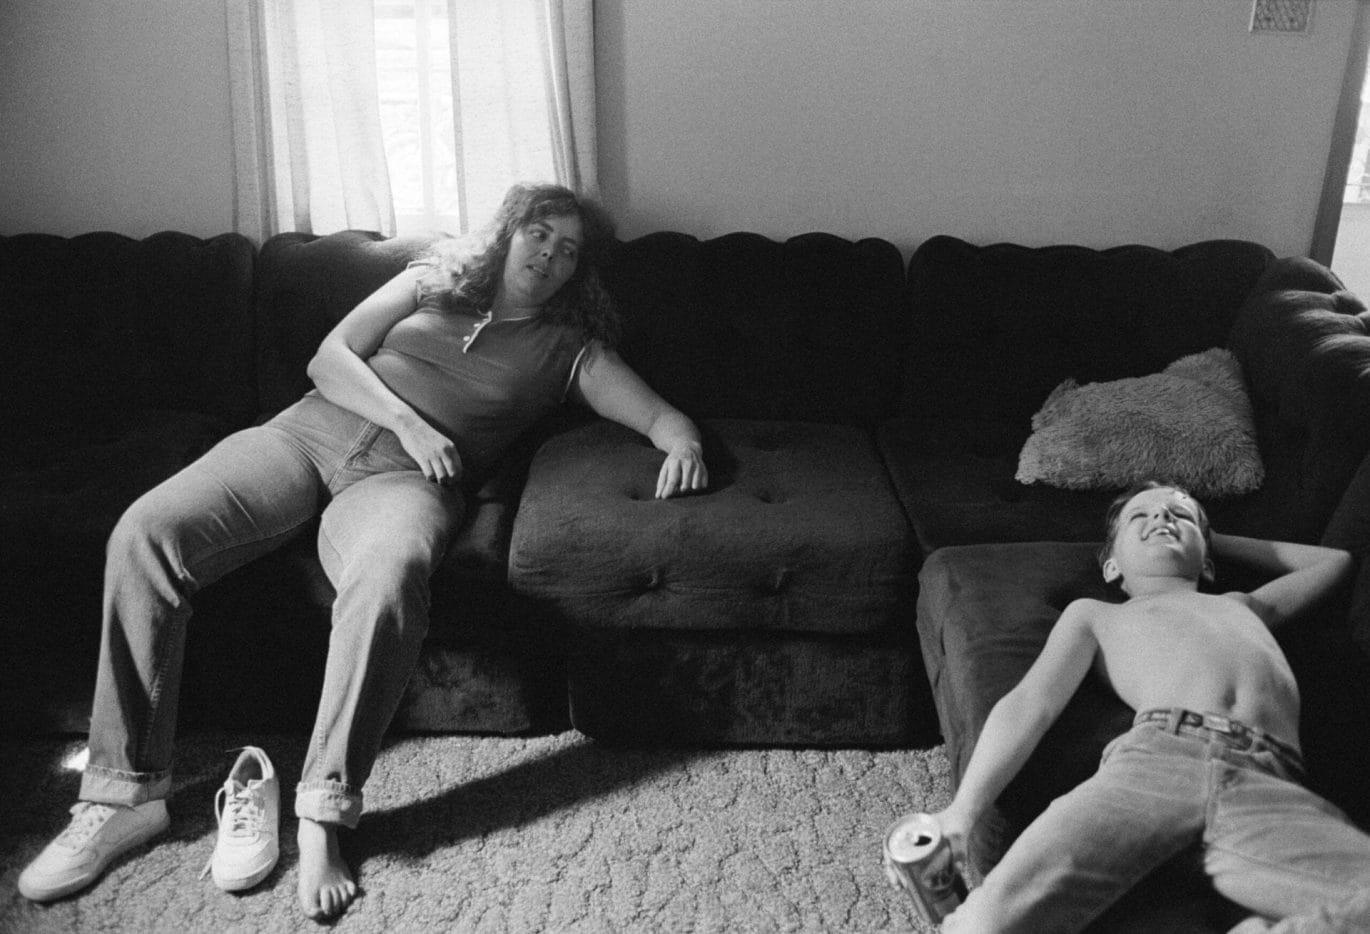 Bertien van Manen, David and his aunt, West Virginia, 1985